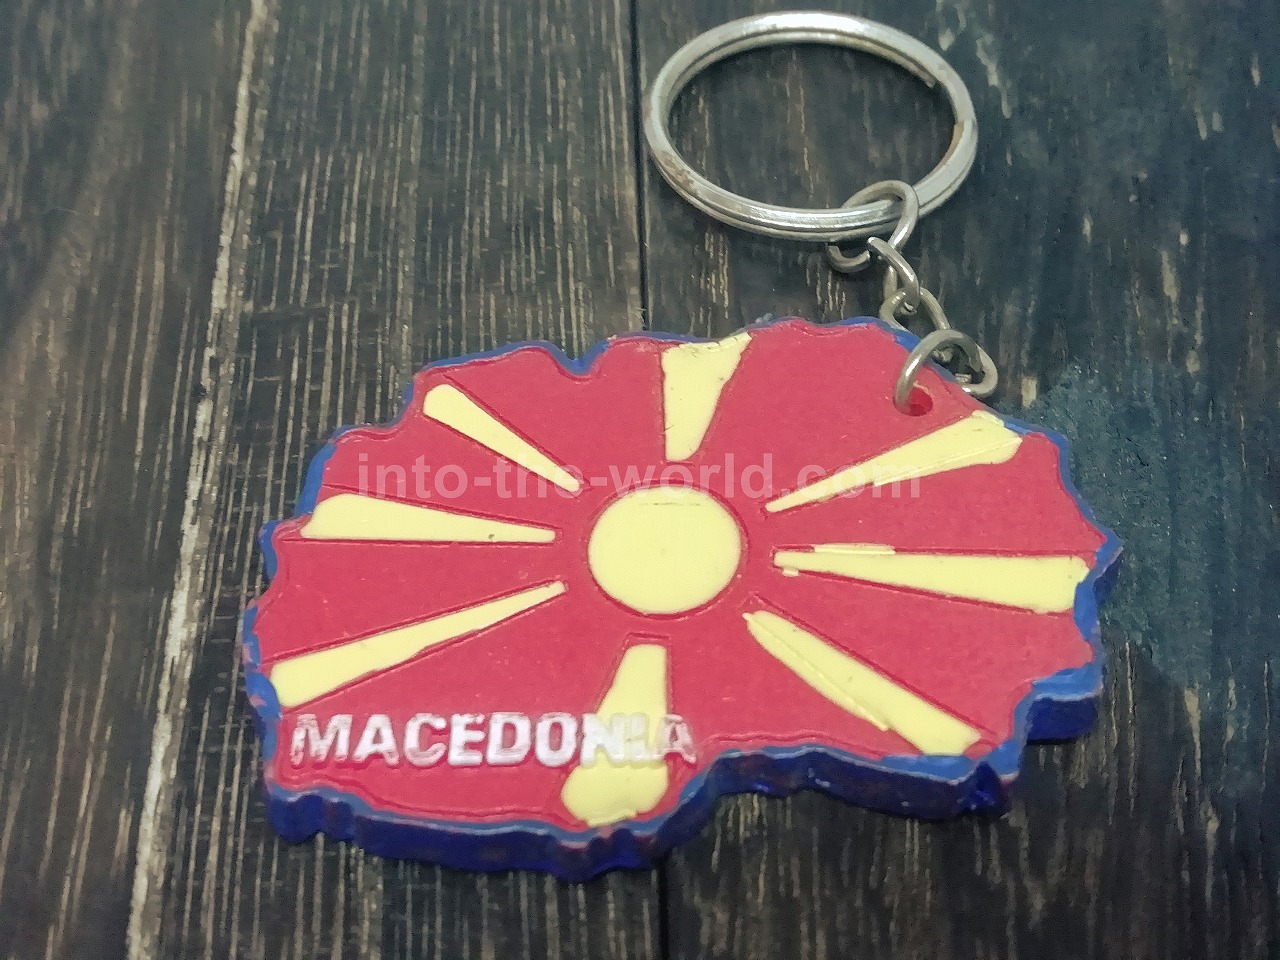 マケドニア キーホルダー お土産